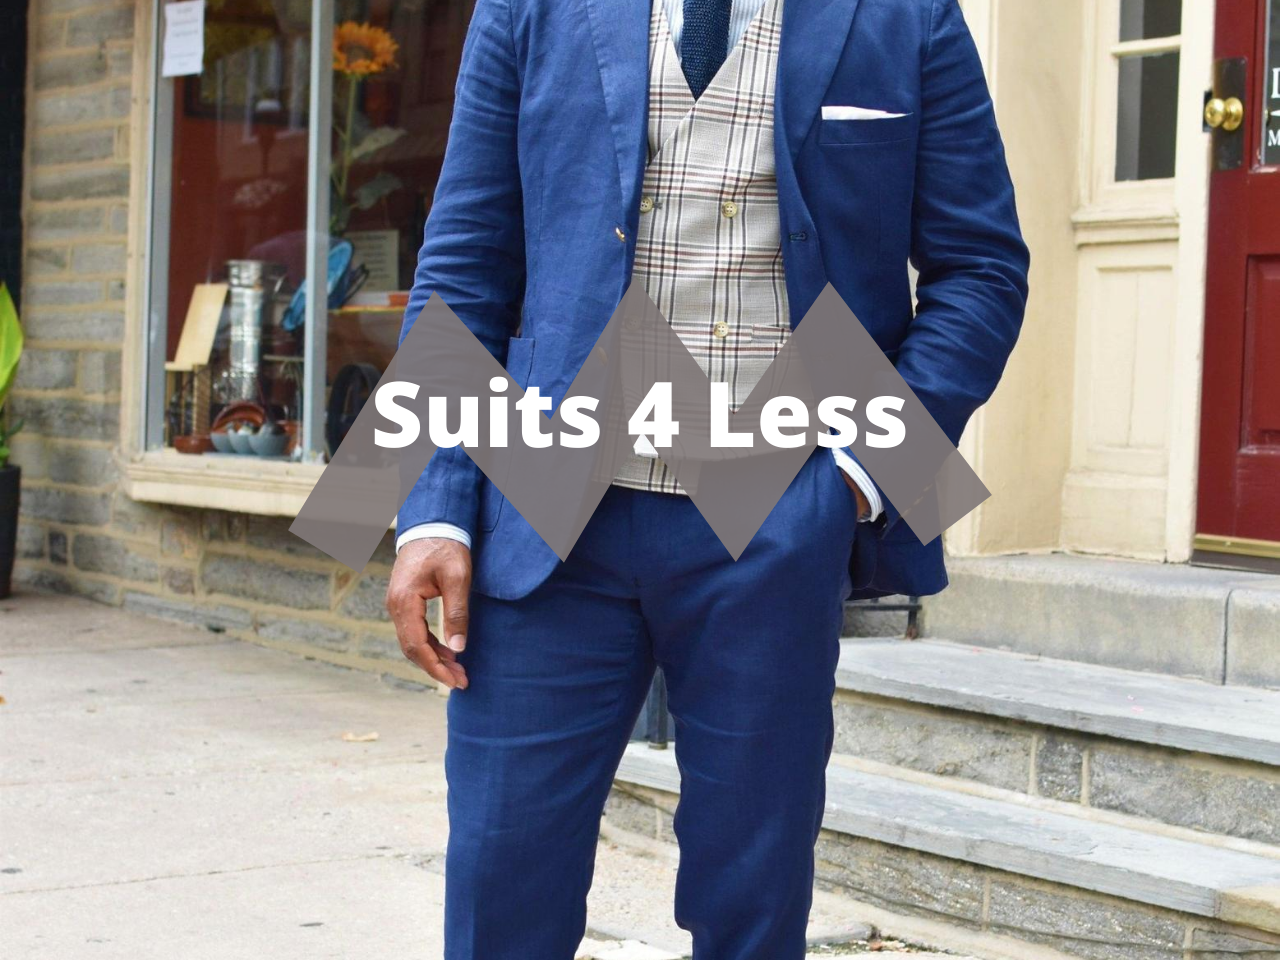 Suits 4 Less